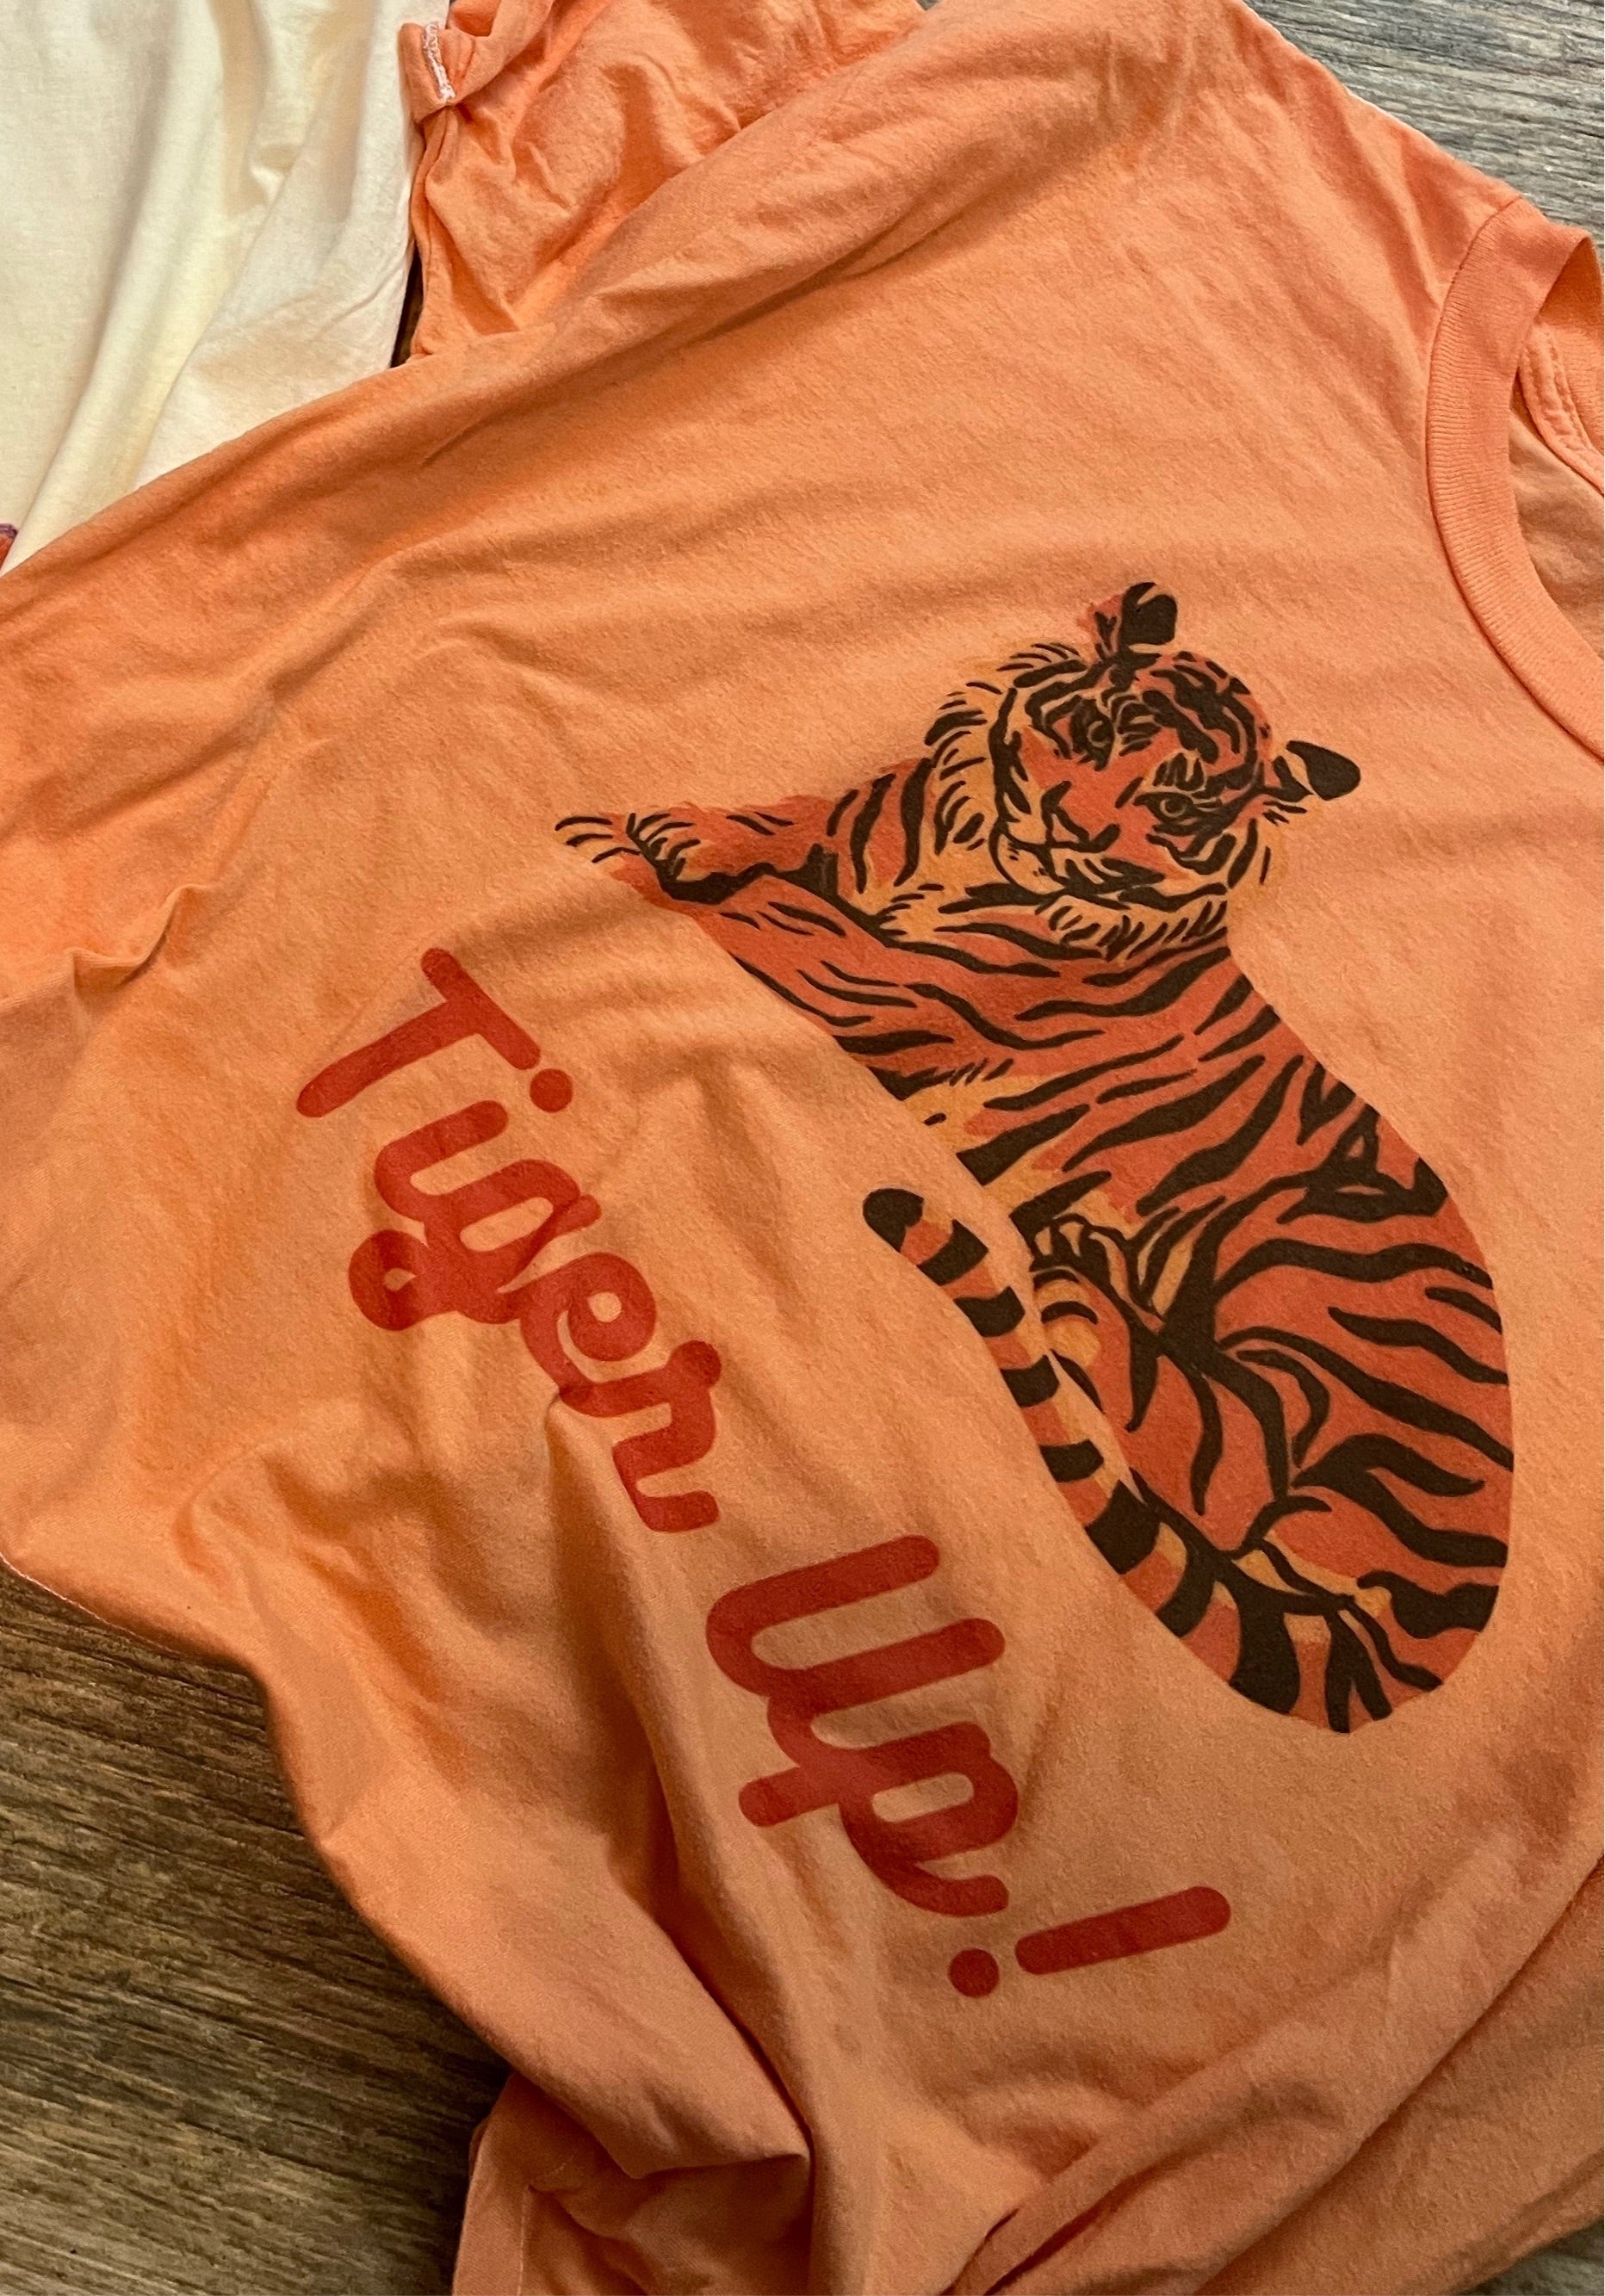 Tiger Up - 0